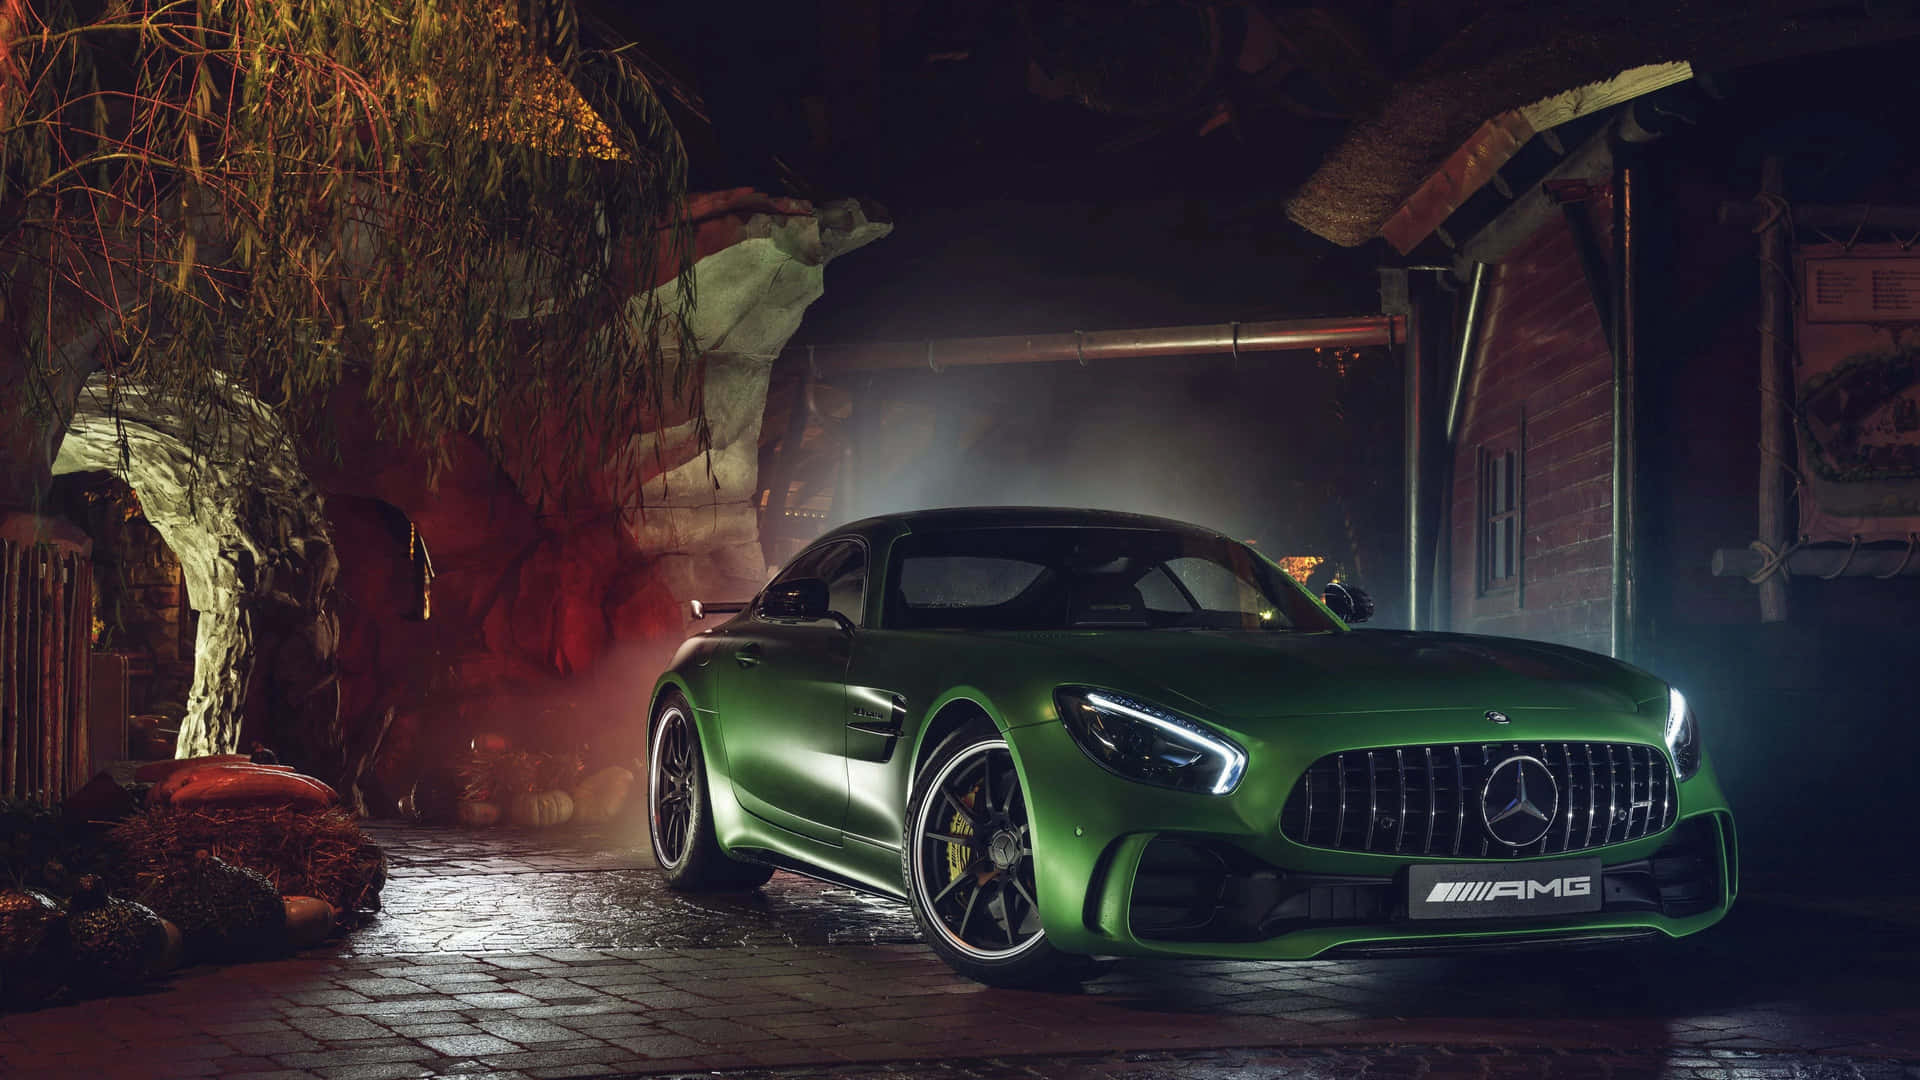 Best Mercedes Background Dark Green Amg Gt